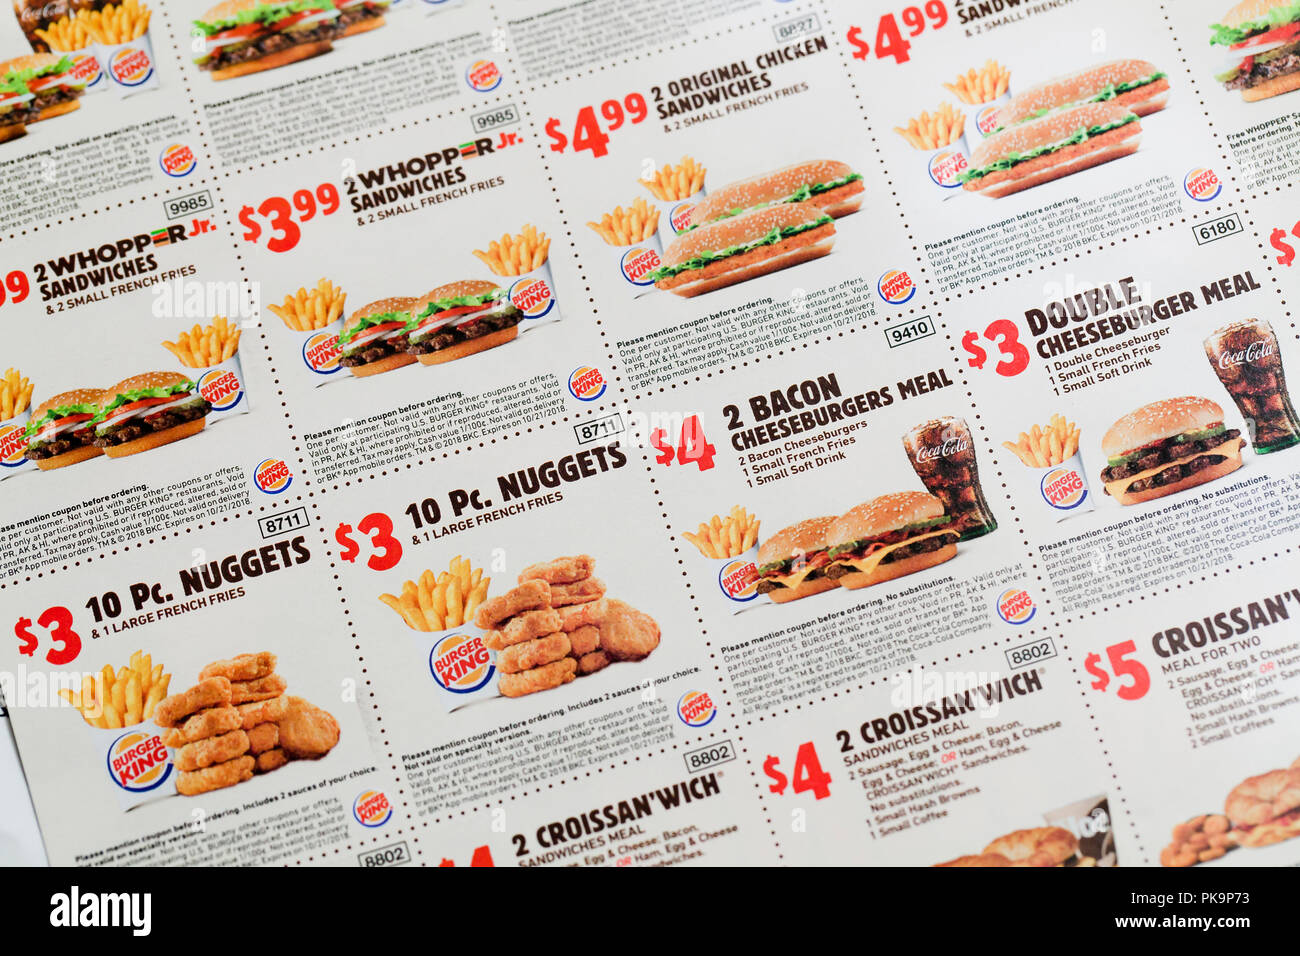 Burger king coupons fotografías e imágenes de alta resolución - Alamy